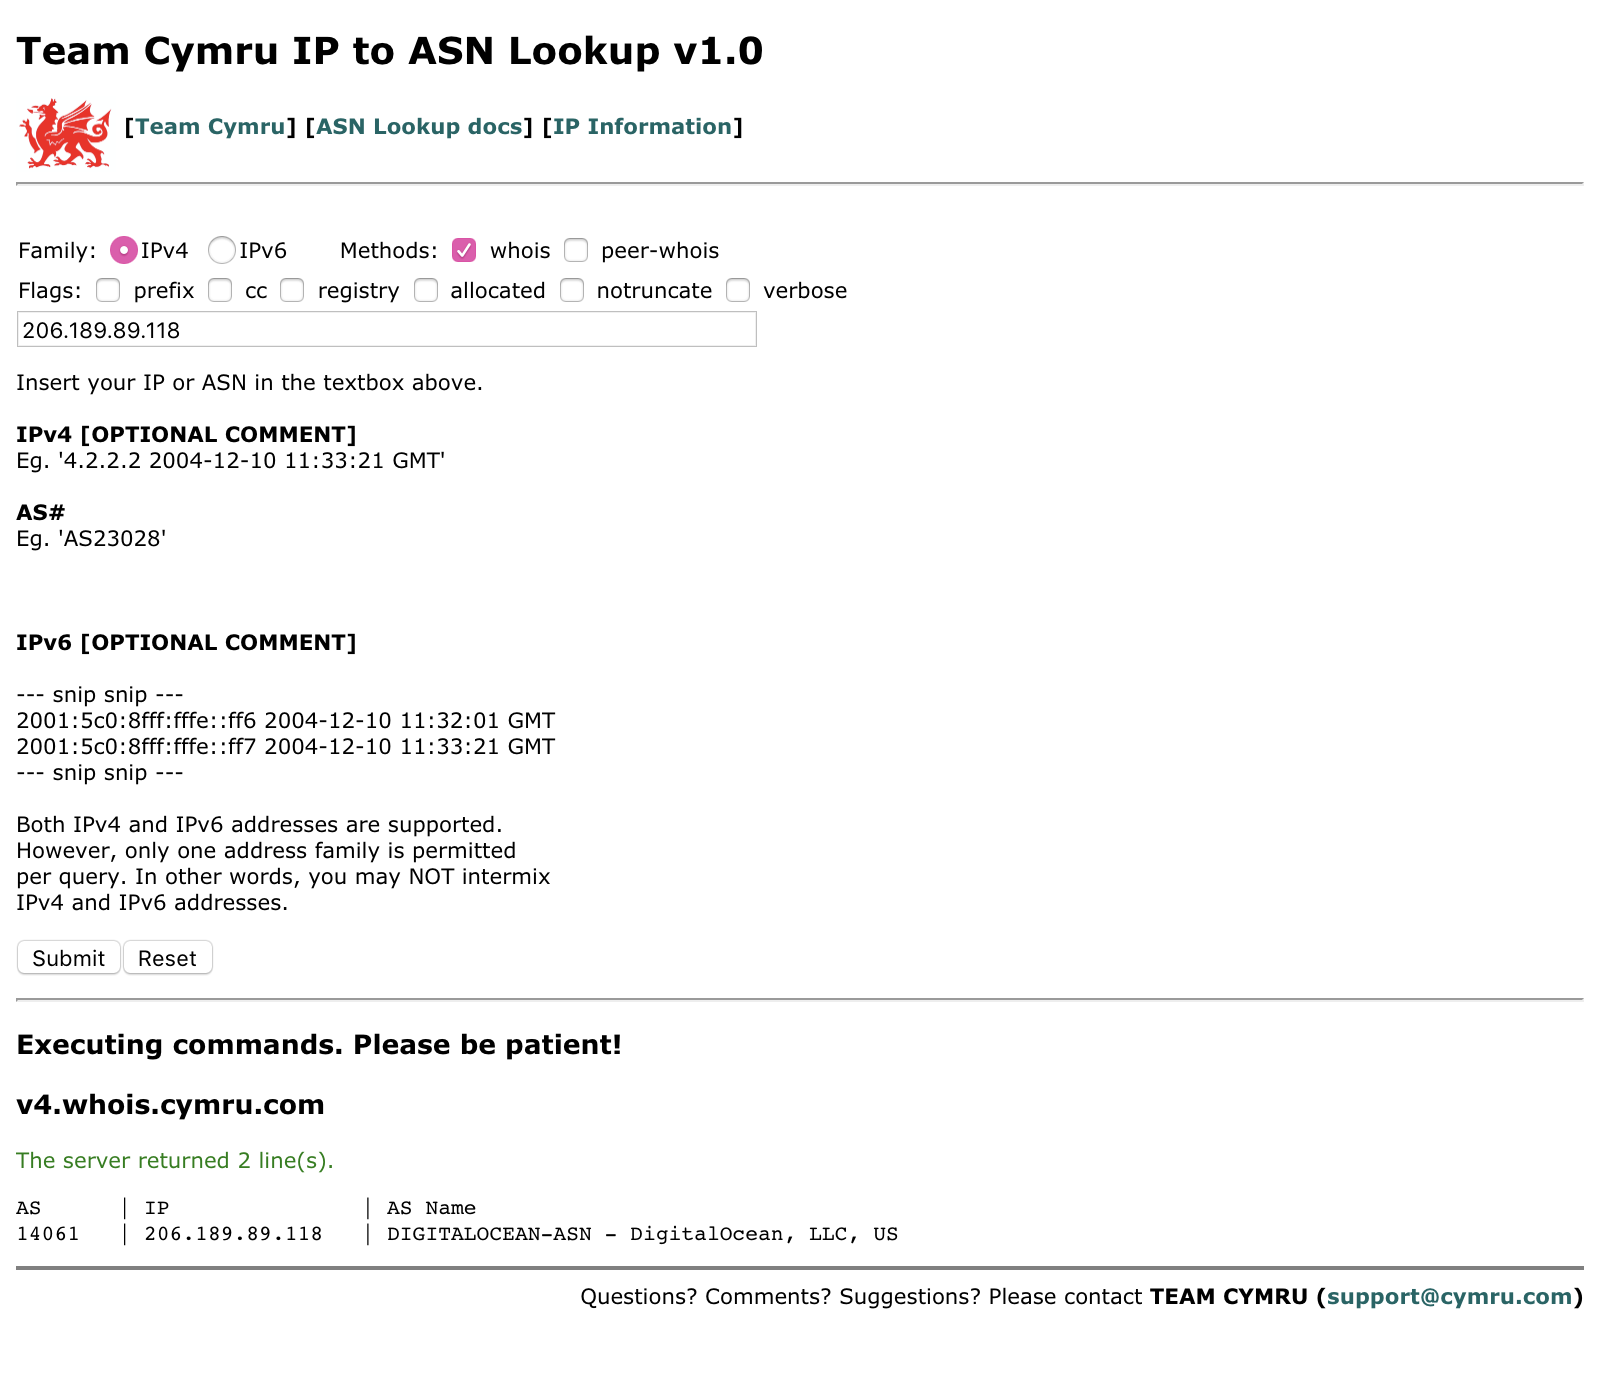 Team Cymru IP to ASN Lookup website